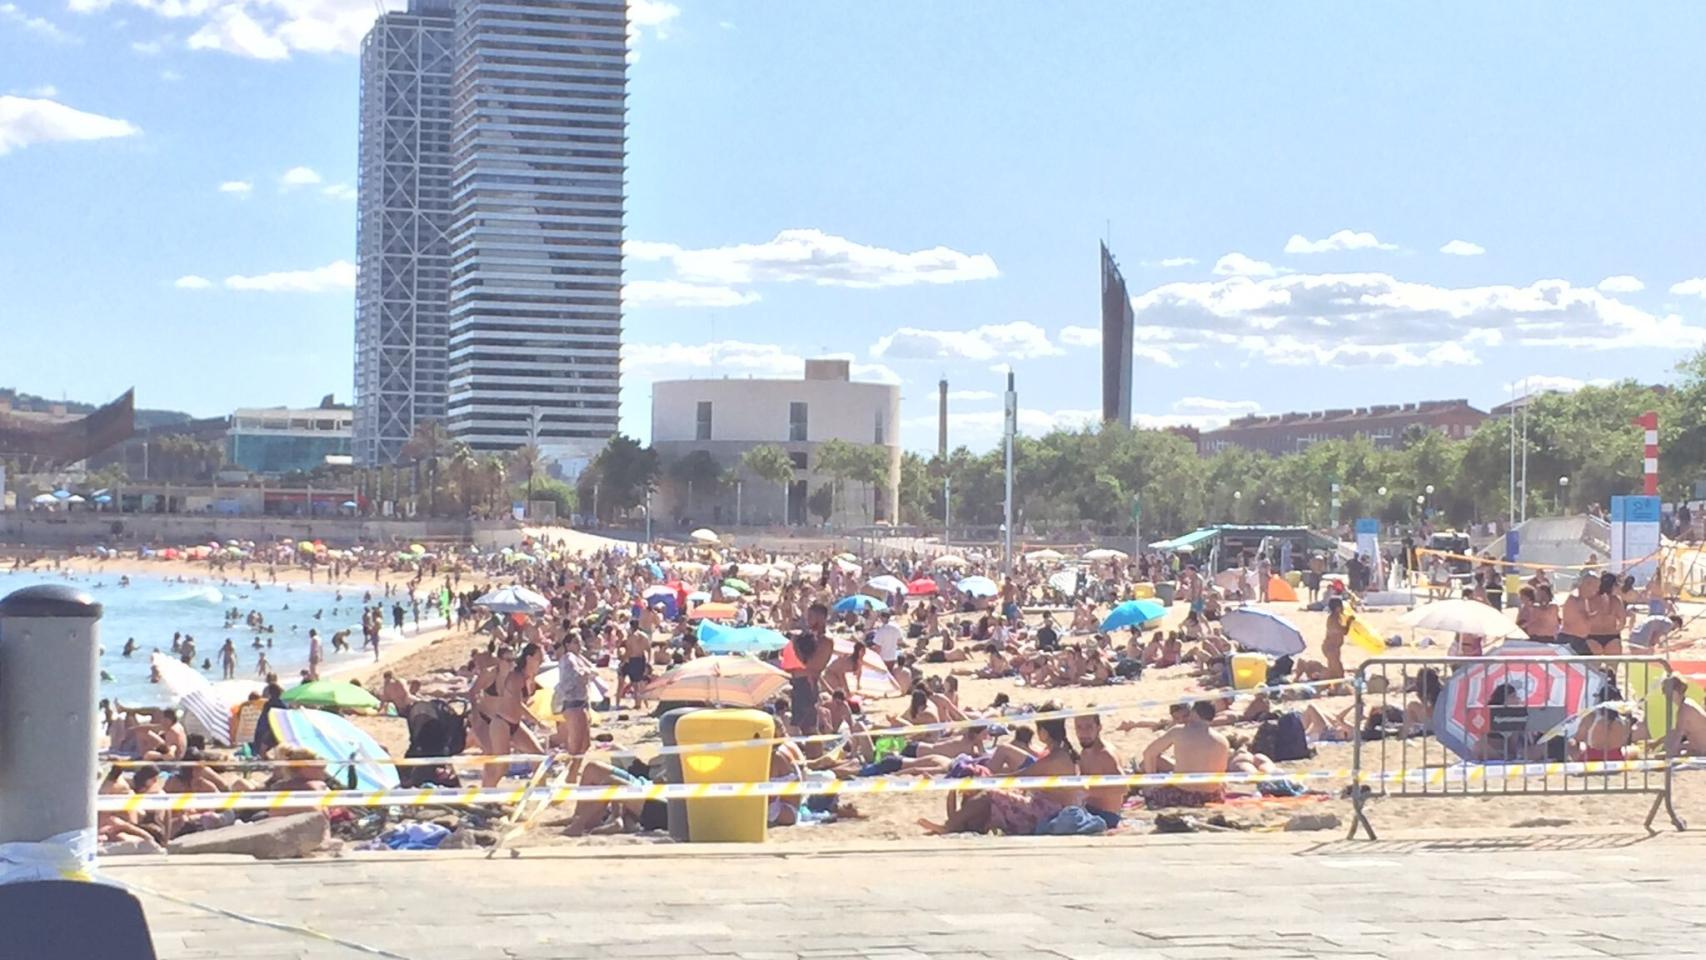 Este sábado 13 de junio se ha impedido el acceso a dos playas de Barcelona. (Twitter)